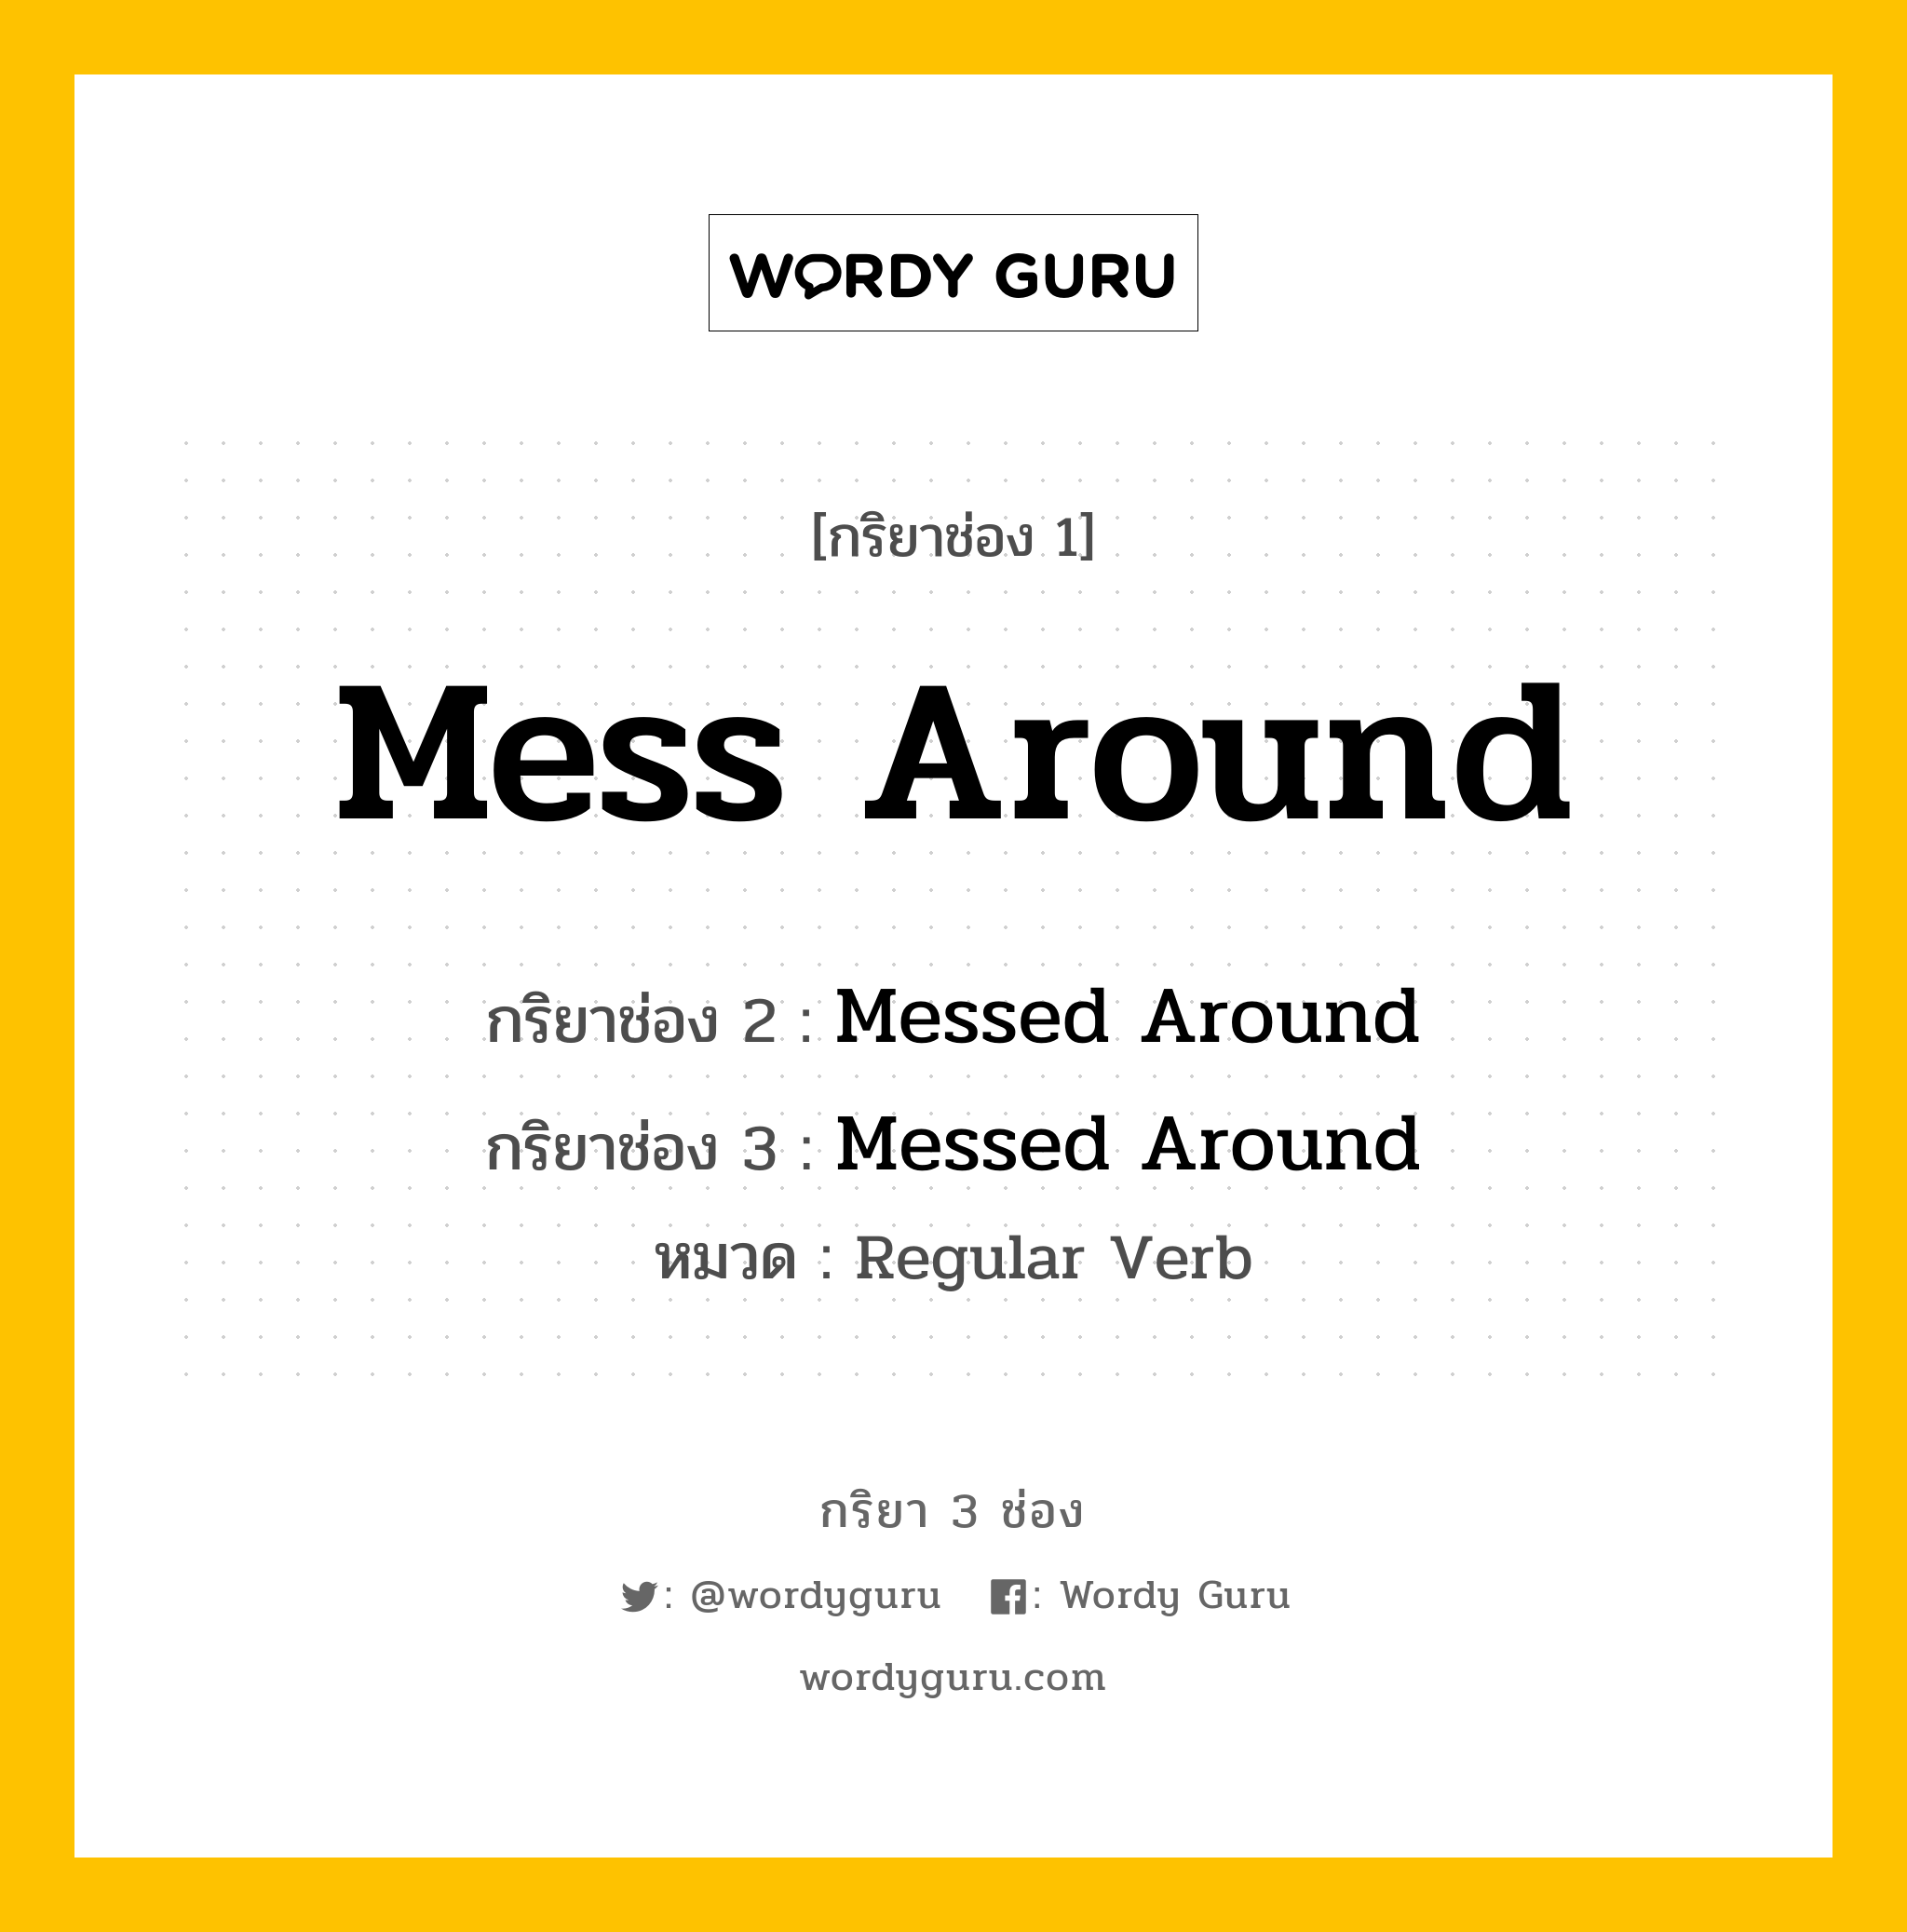 กริยา 3 ช่อง: Mess Around ช่อง 2 Mess Around ช่อง 3 คืออะไร, กริยาช่อง 1 Mess Around กริยาช่อง 2 Messed Around กริยาช่อง 3 Messed Around หมวด Regular Verb หมวด Regular Verb